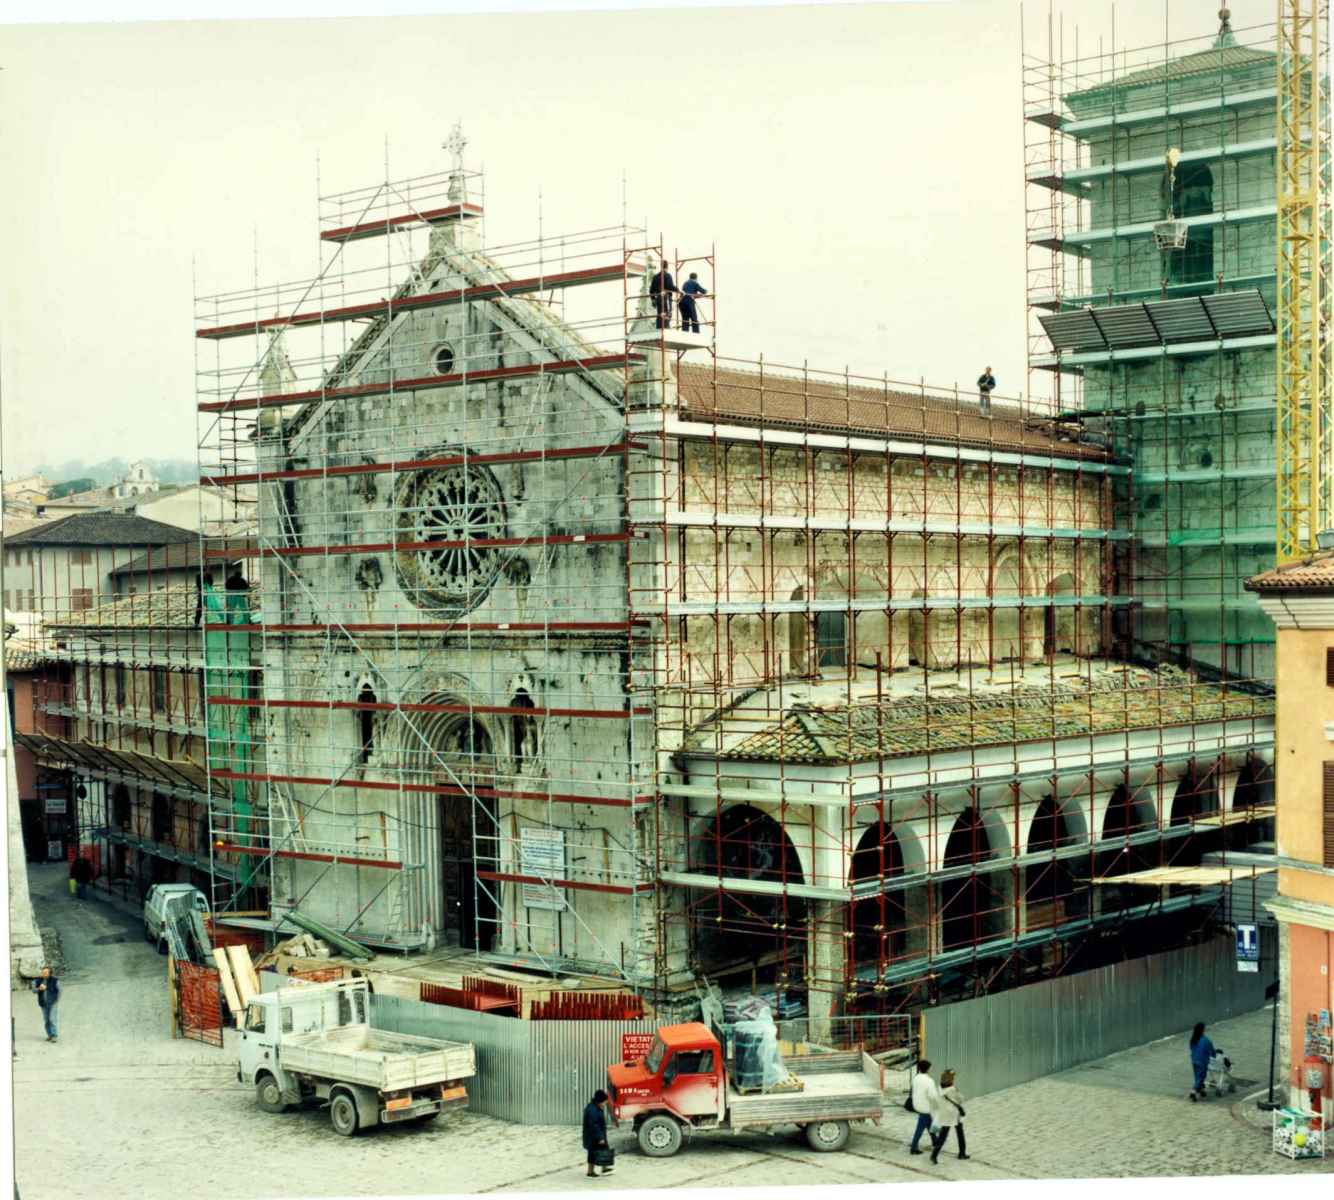 Basilica di San Benedetto, ristrutturazione (Norcia) - Contributo di Naticchioni Gianpaolo alla call \"INSIEME#SANBENEDETTO - raccogliamo la memoria\"